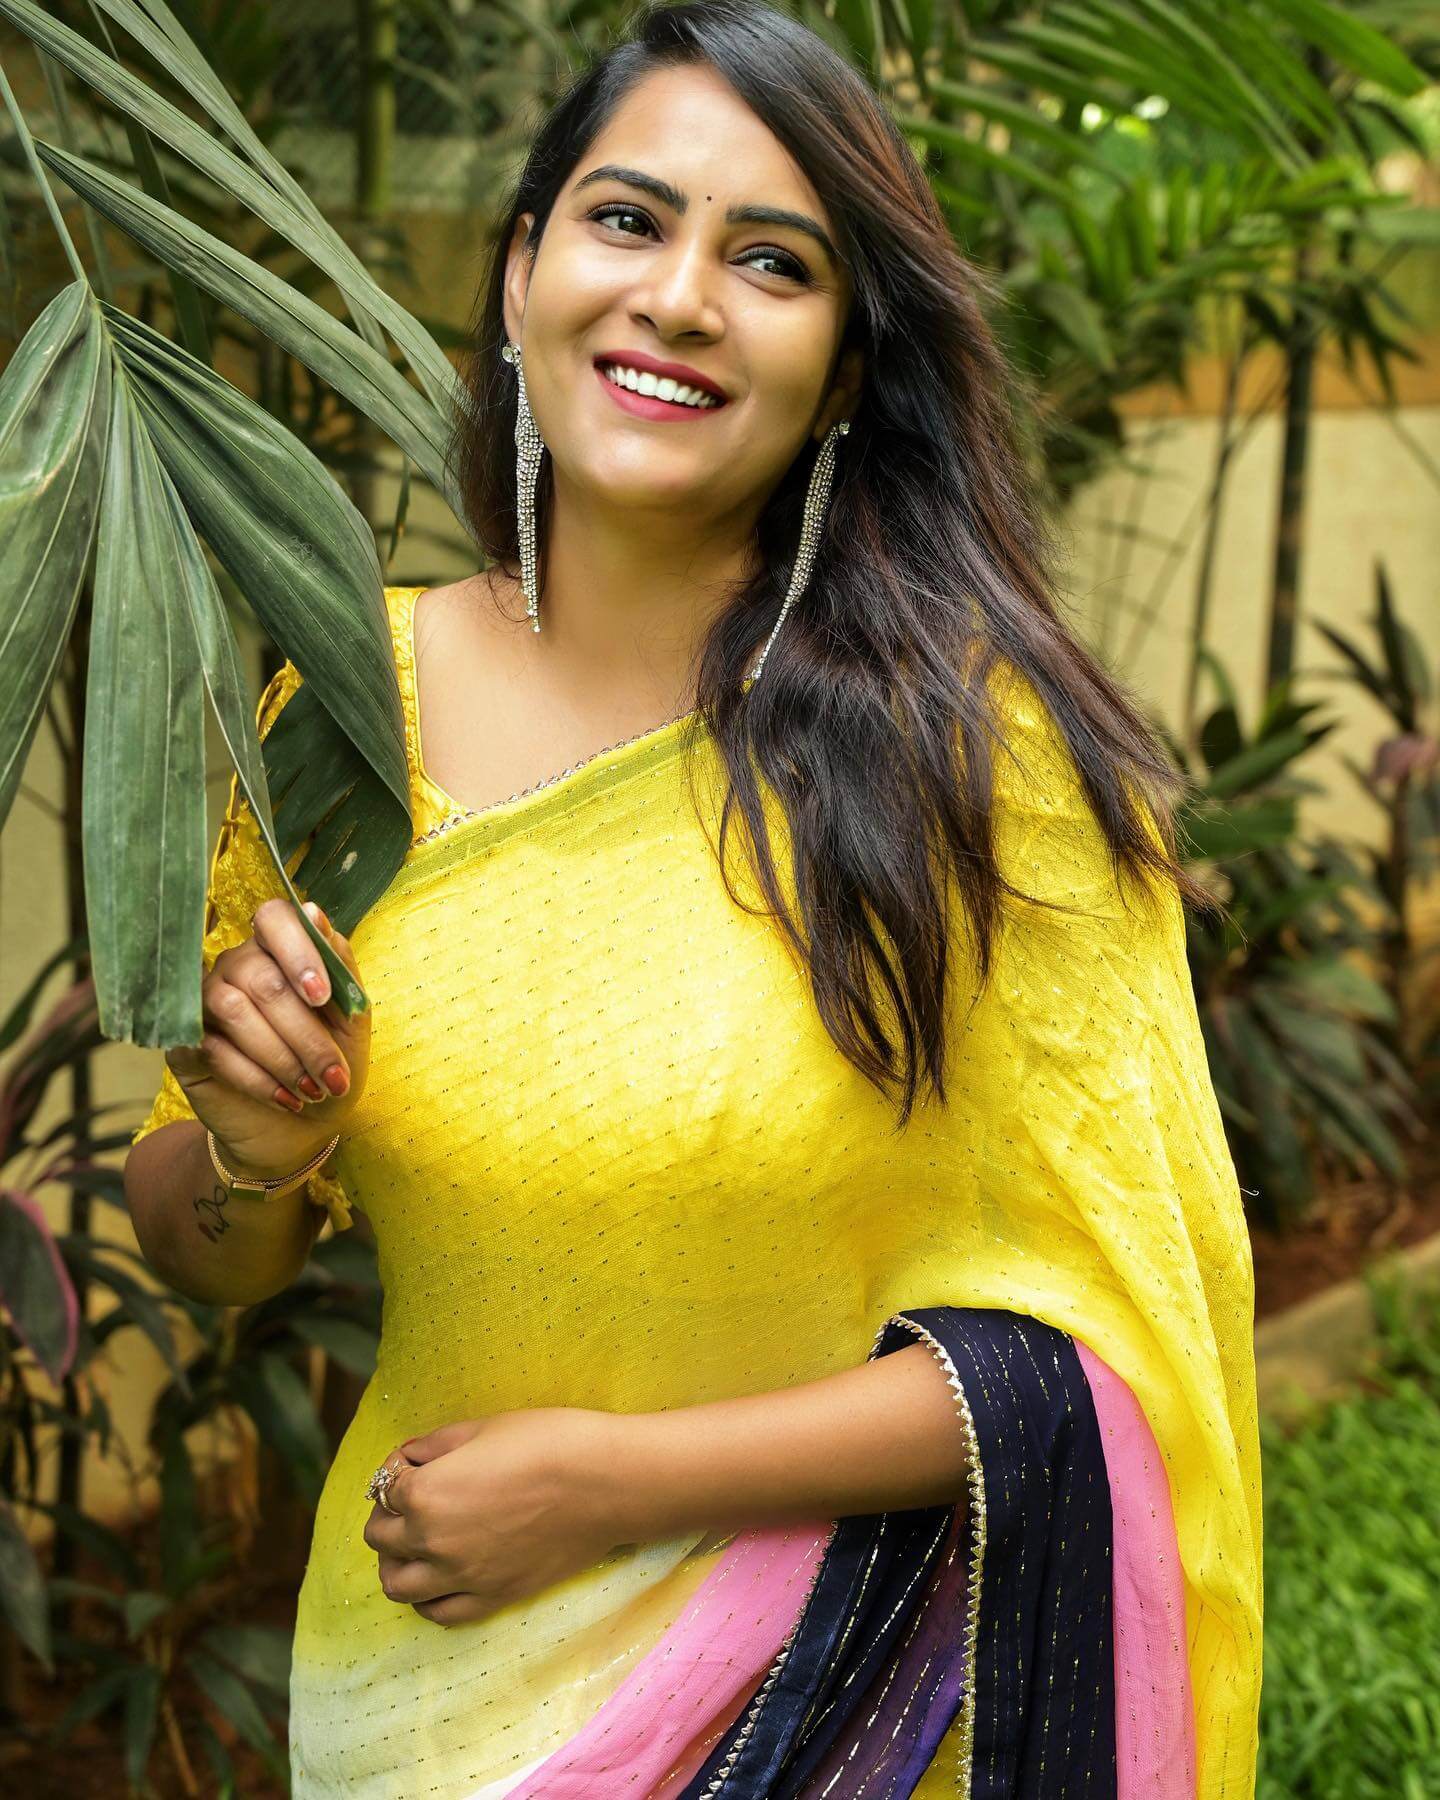 Actress Himaja in yellow and black saree